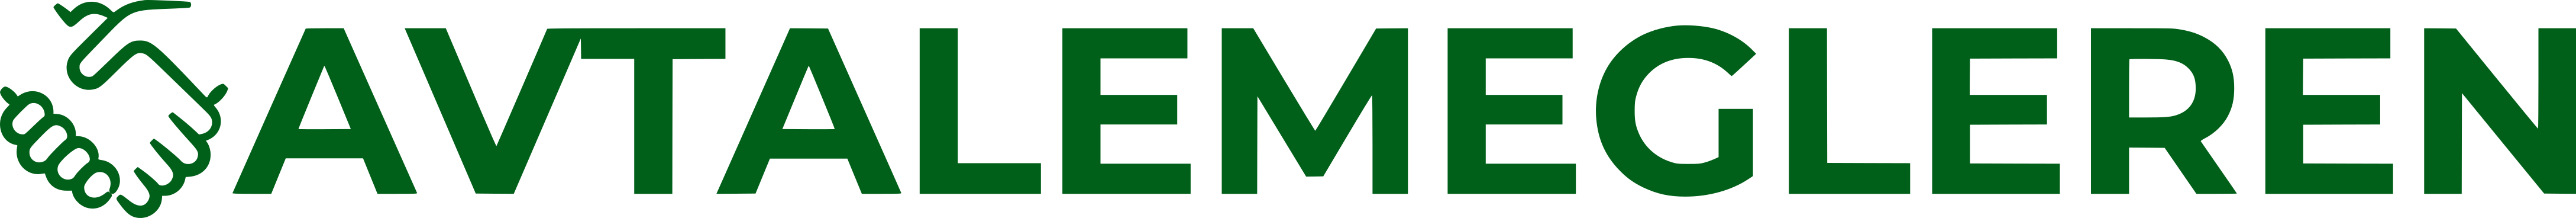 avtalemegleren logo grønn